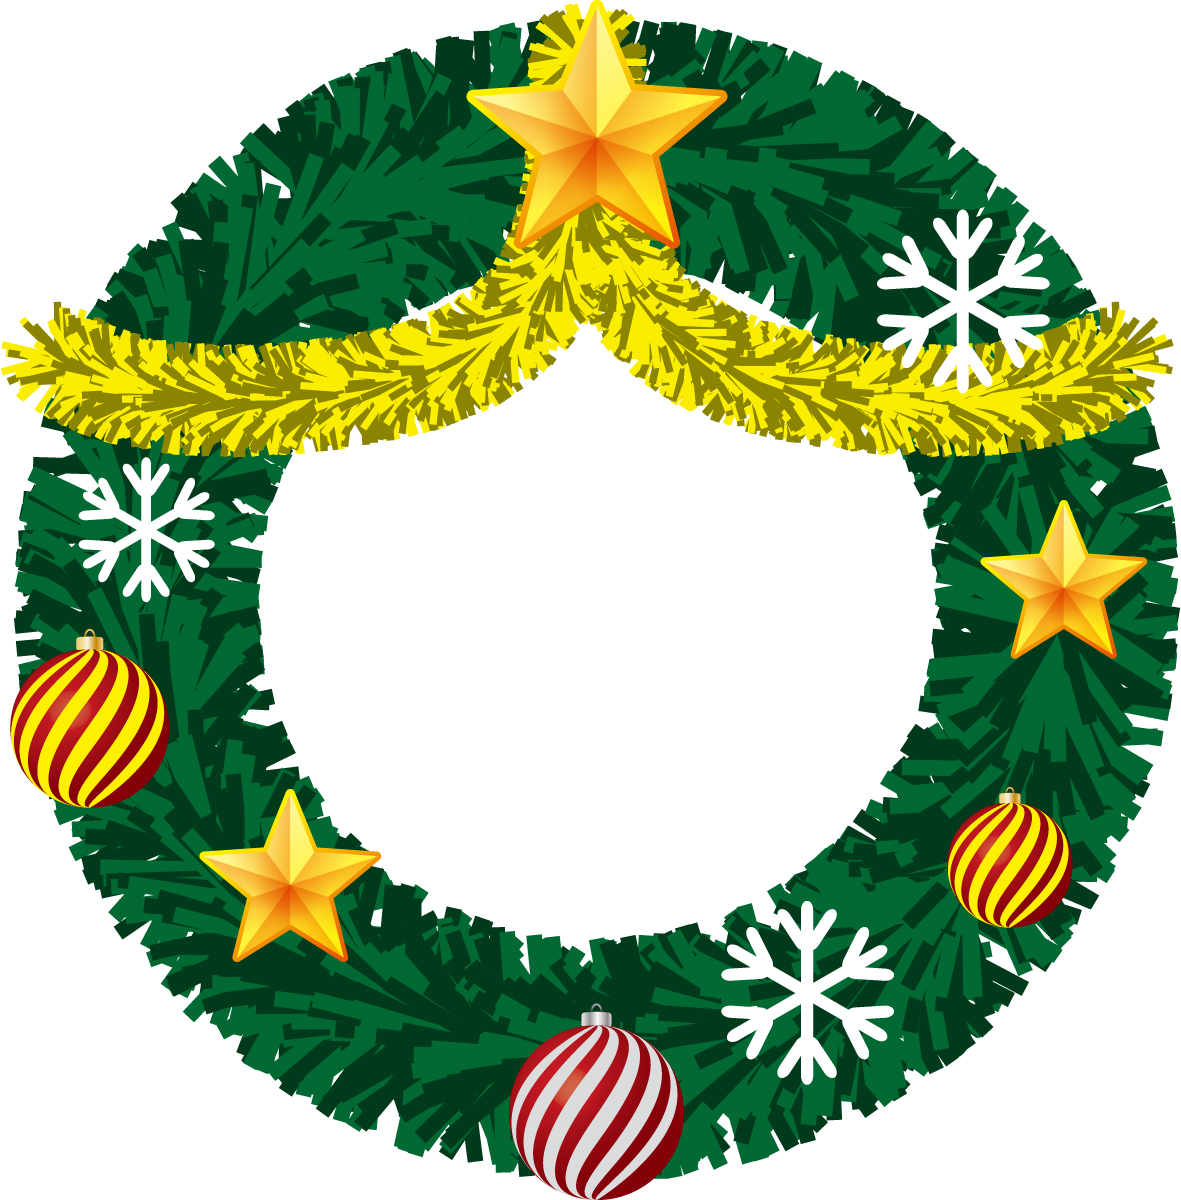 《12月19日》可愛いリースを作ろう♪ピエリ守山でキッズ向けワークショップ「クリスマスリースづくり」が開催！